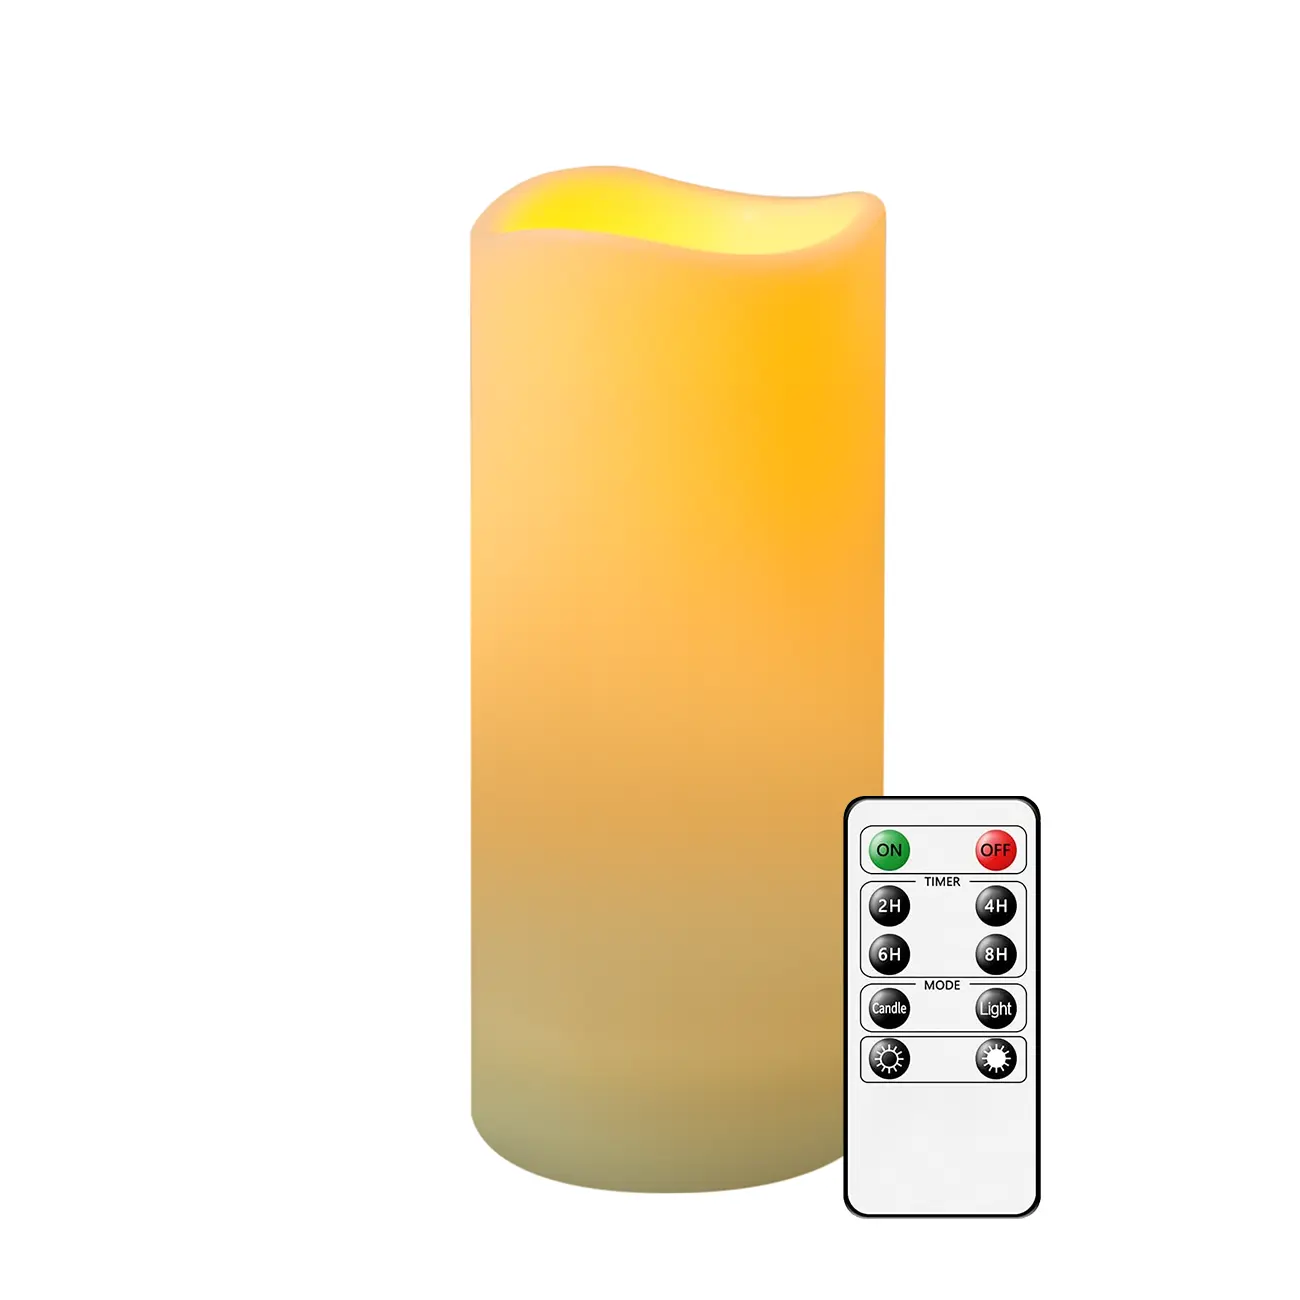 Lilin tanpa api LED tahan air pilar plastik lilin dioperasikan dengan baterai lilin kedip pengendali jarak jauh 10 tombol hadiah pesta